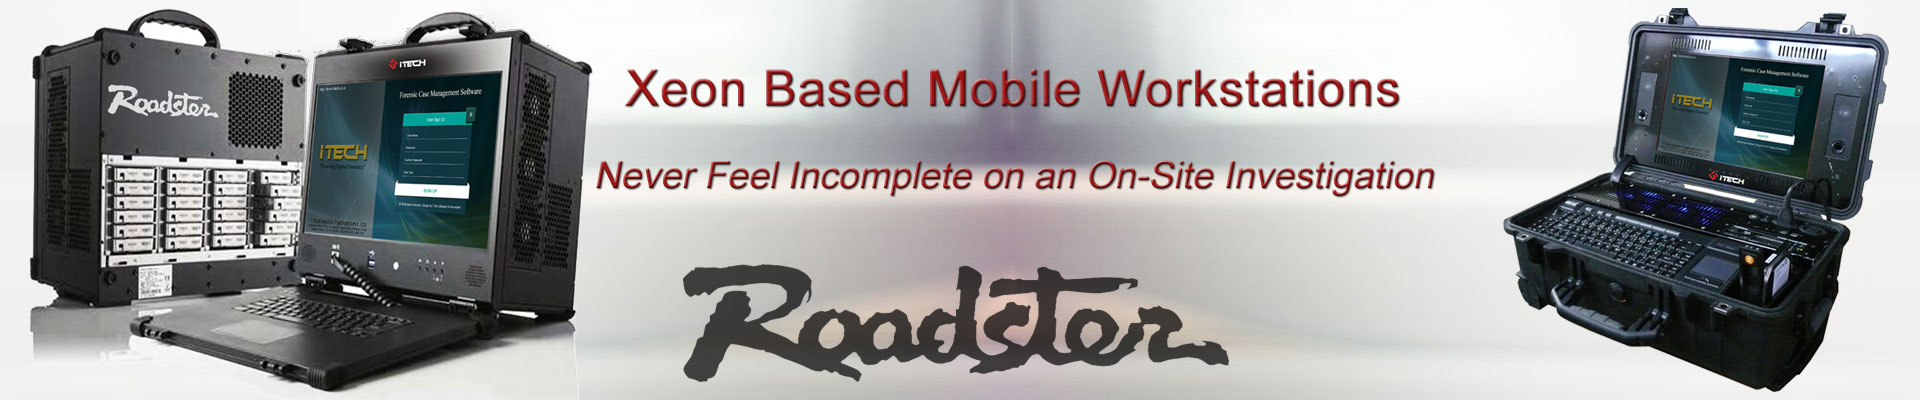 Roadster, High End Mobile Forensics Workstation